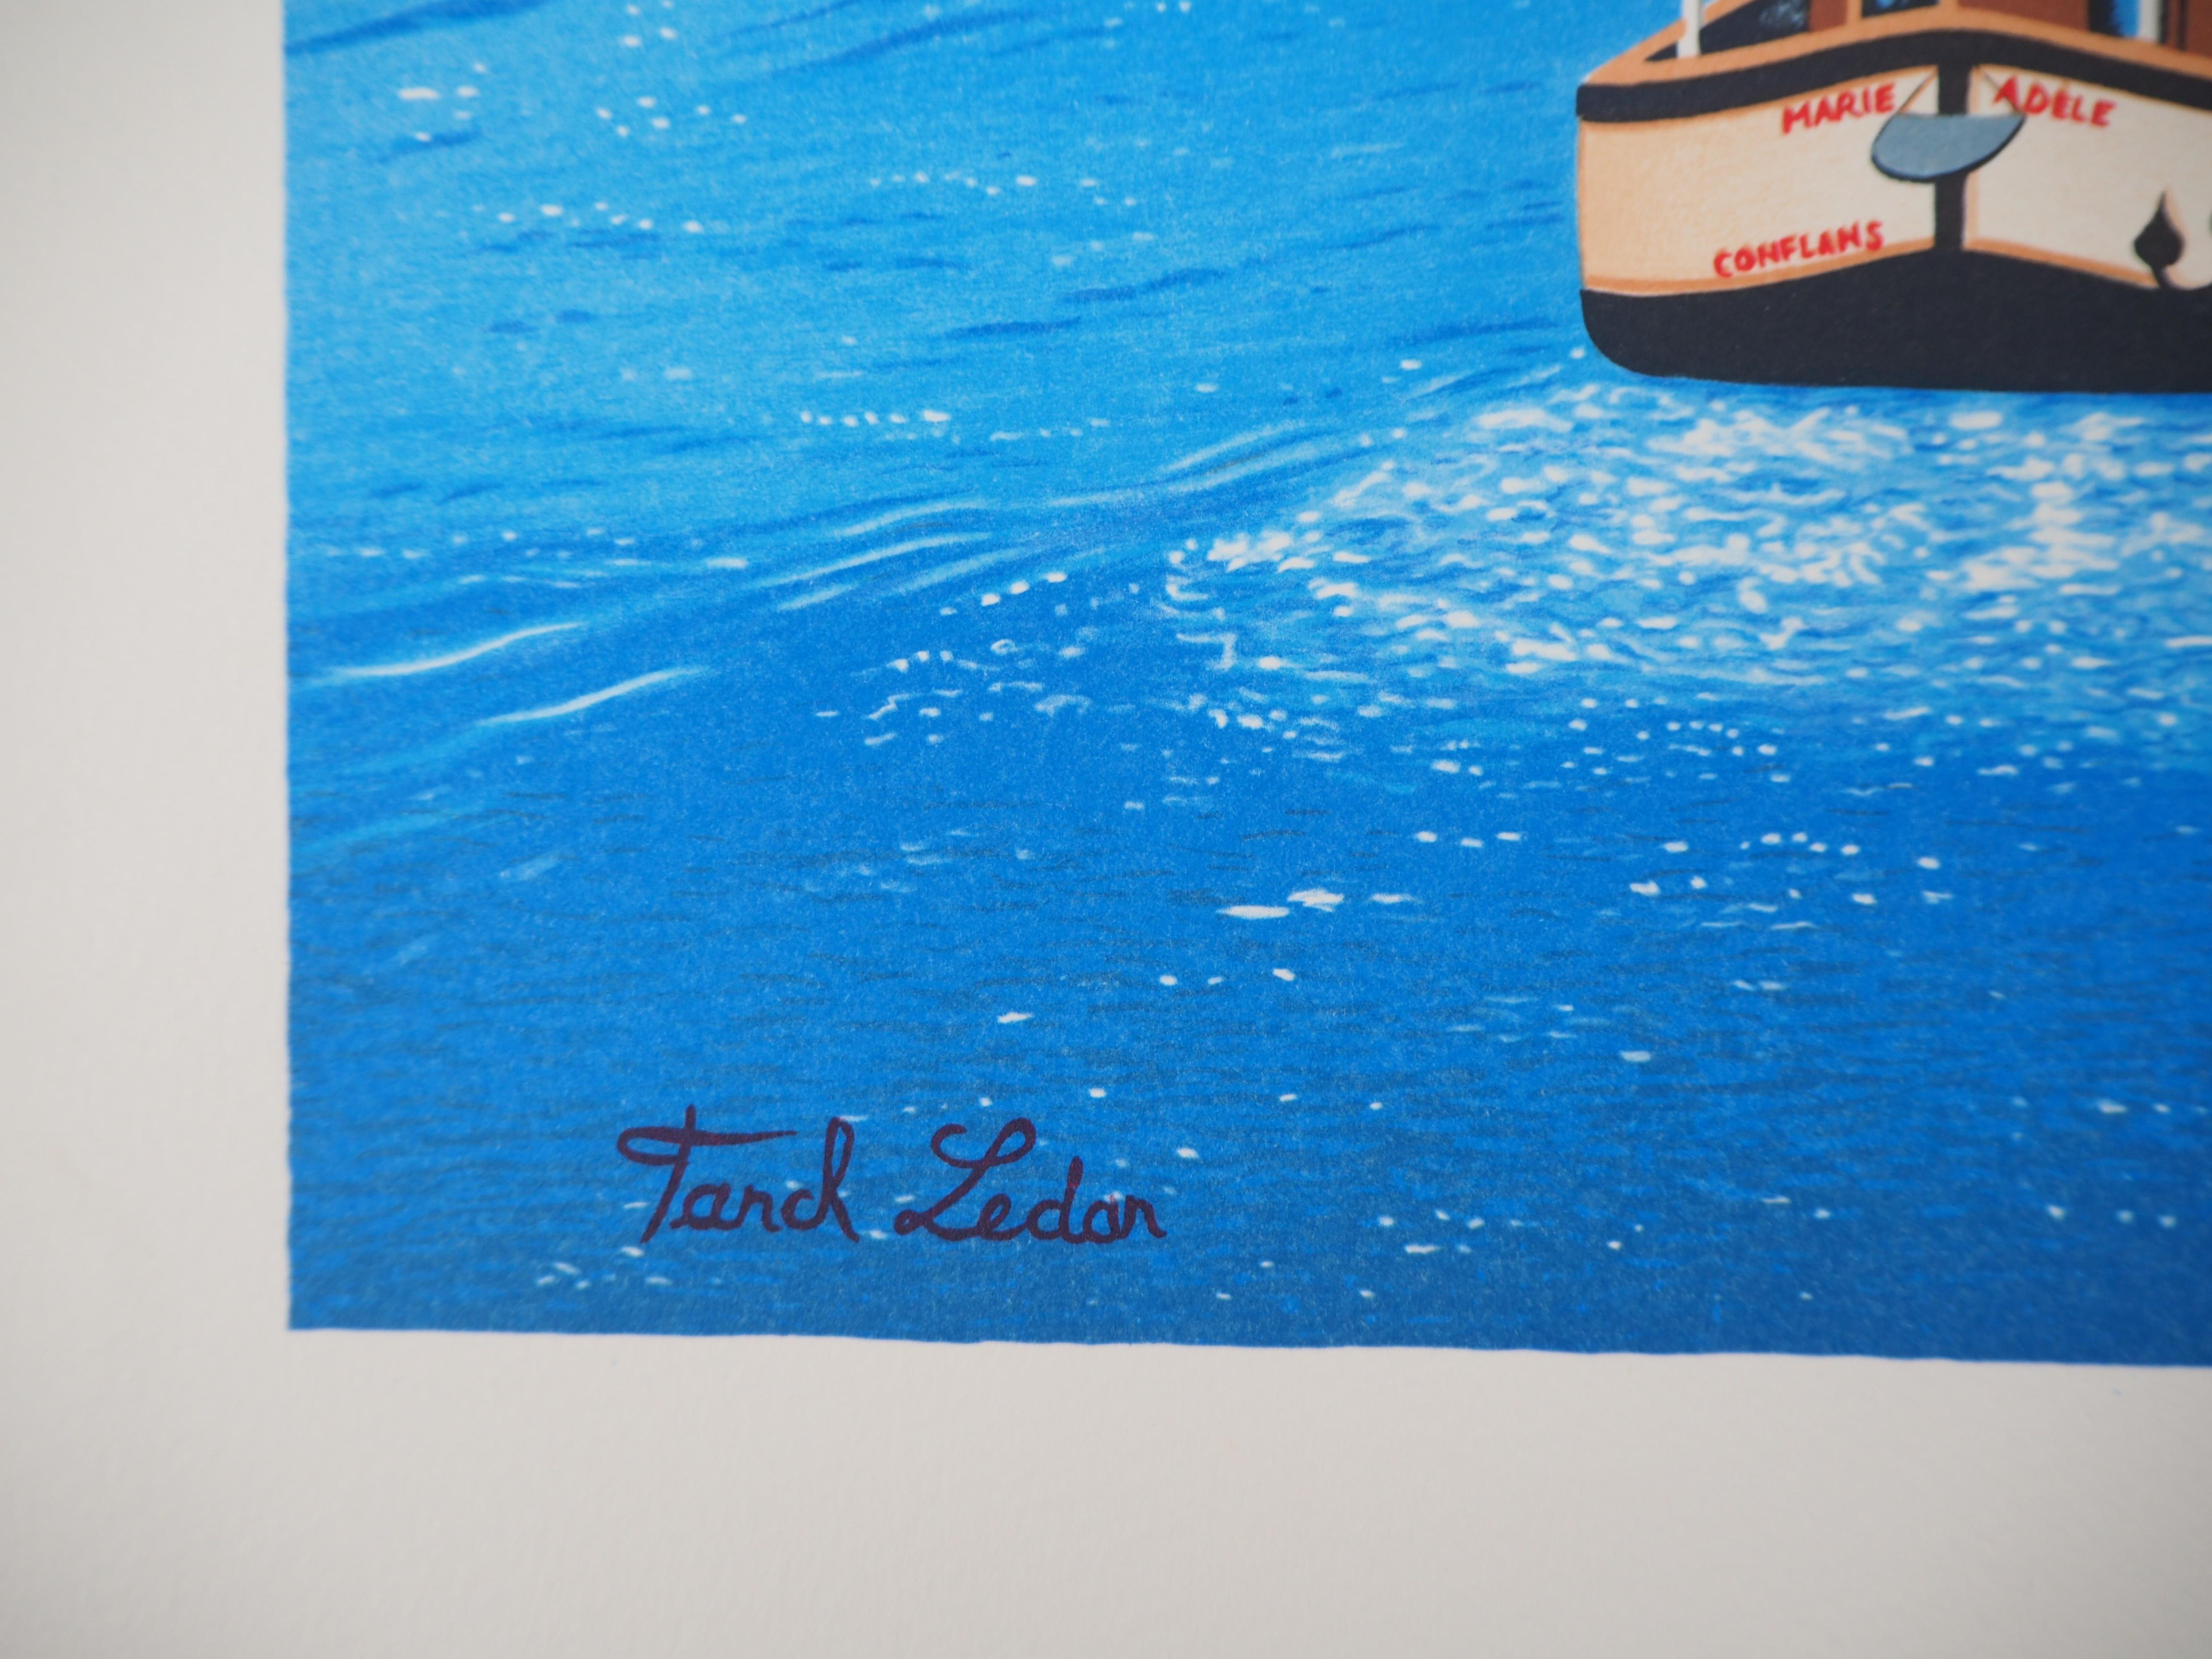 Paris, Ile Saint Louis : Le fleuve Seine, les bateaux et Notre Dame - Lithographie originale - Print de Fanch (Francois Ledan)